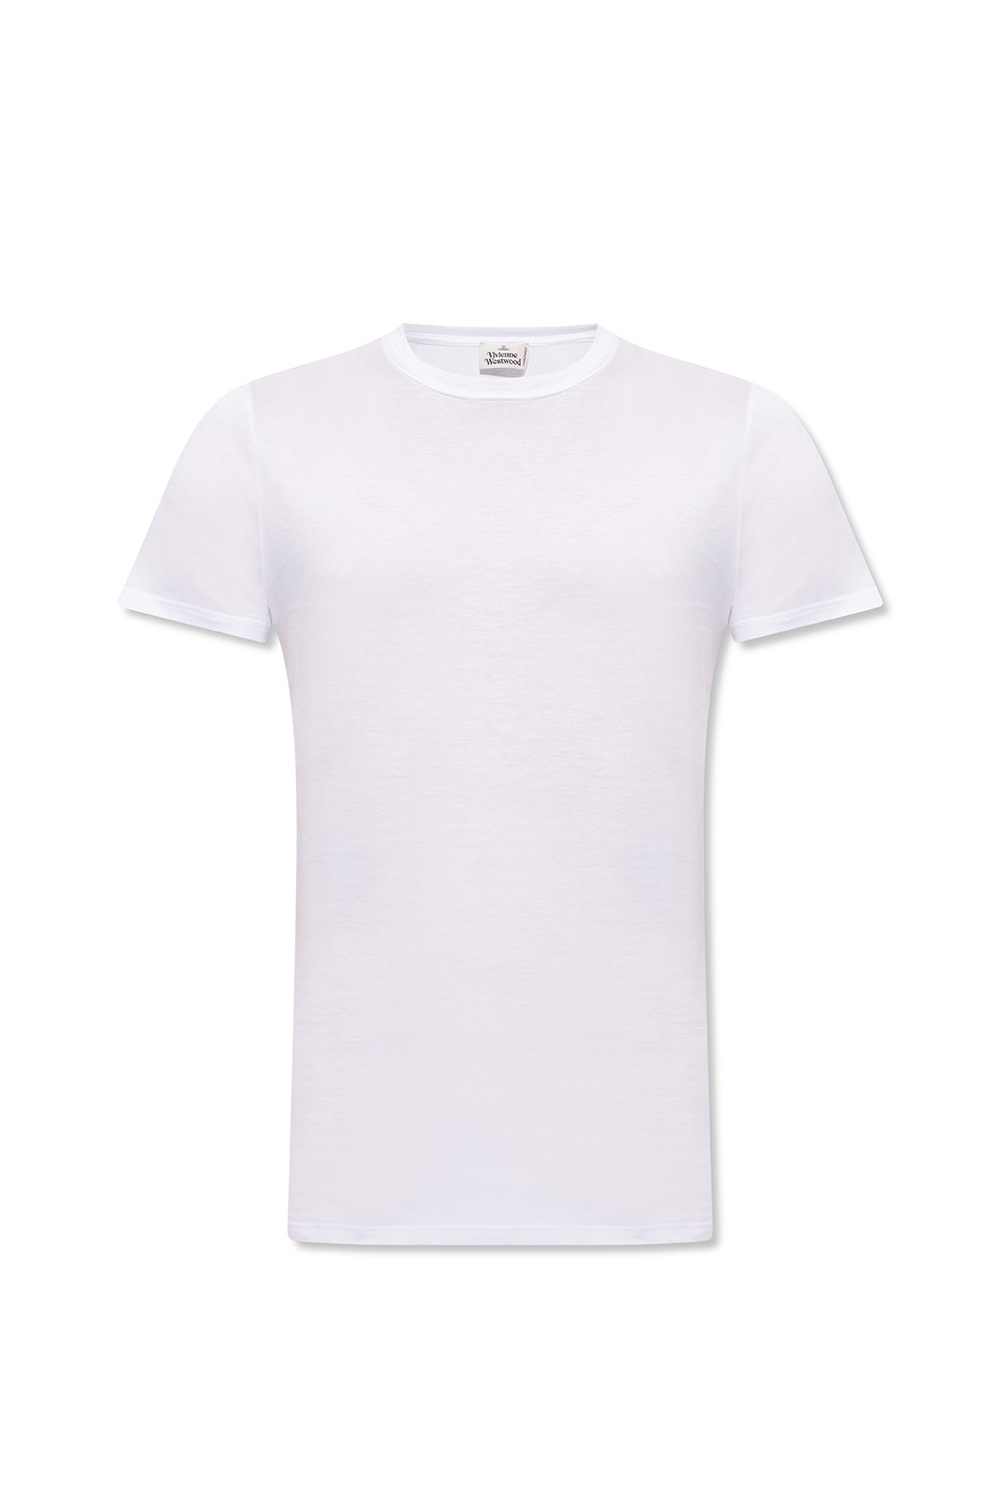 print short - Maison Kitsuné graphic - Extension-fmedShops Switzerland -  Team FC Crest Print T Shirt Ladies - shirt Vivienne Westwood - sleeved T